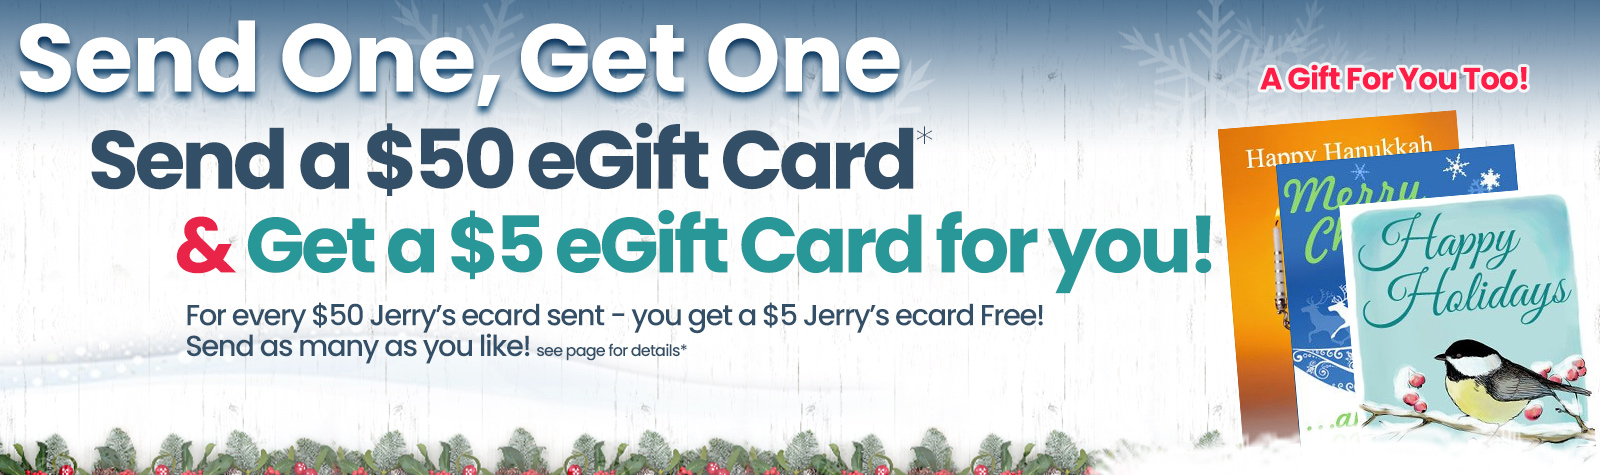 Get a free Jerrys ecard